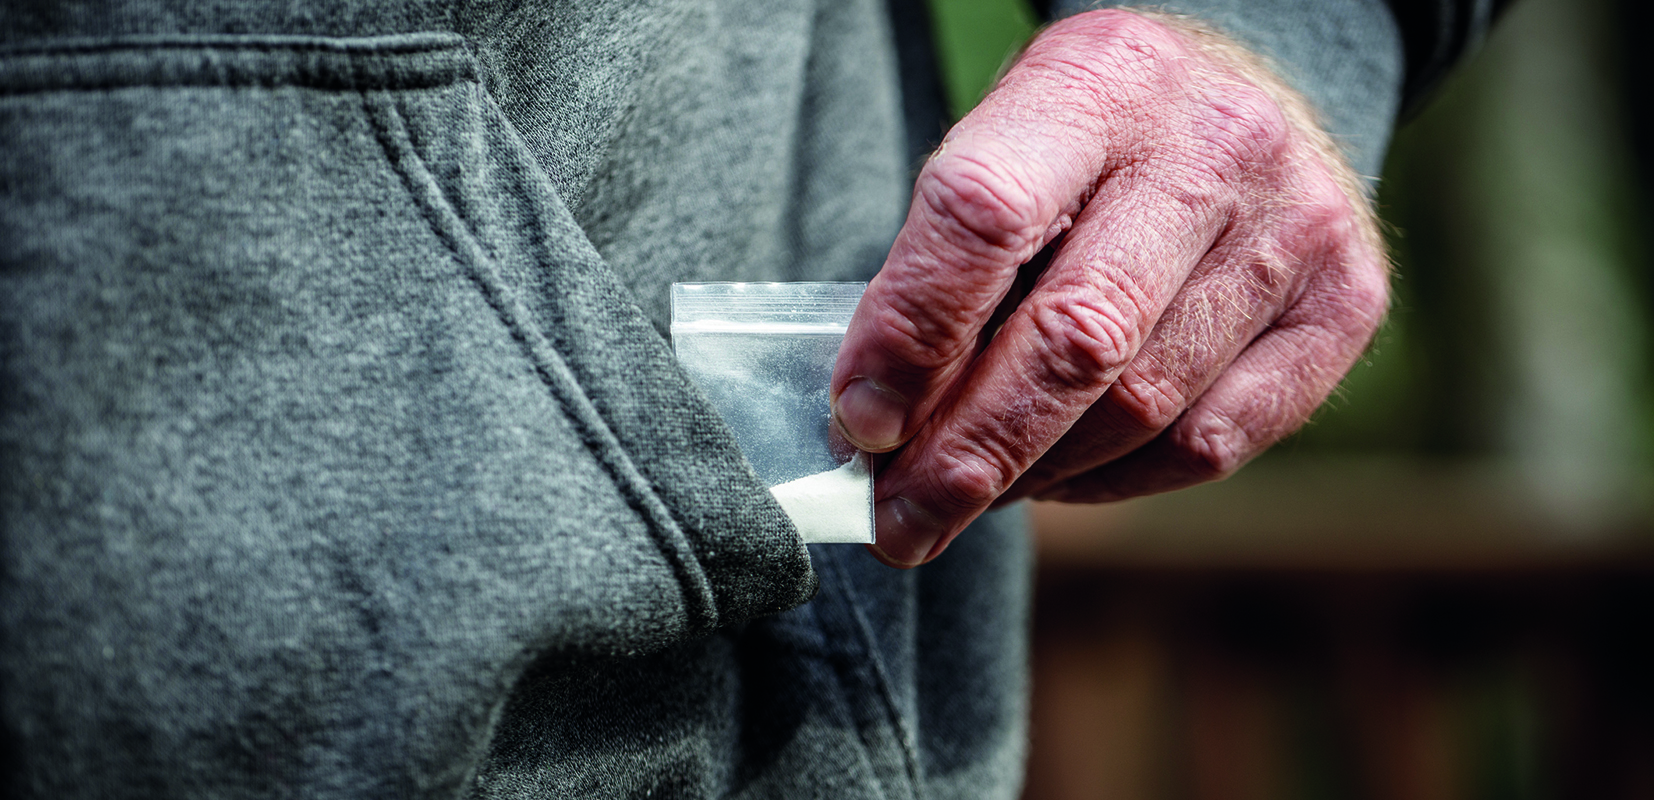 Persona mayor con papelina de droga escondida en el bolsillo